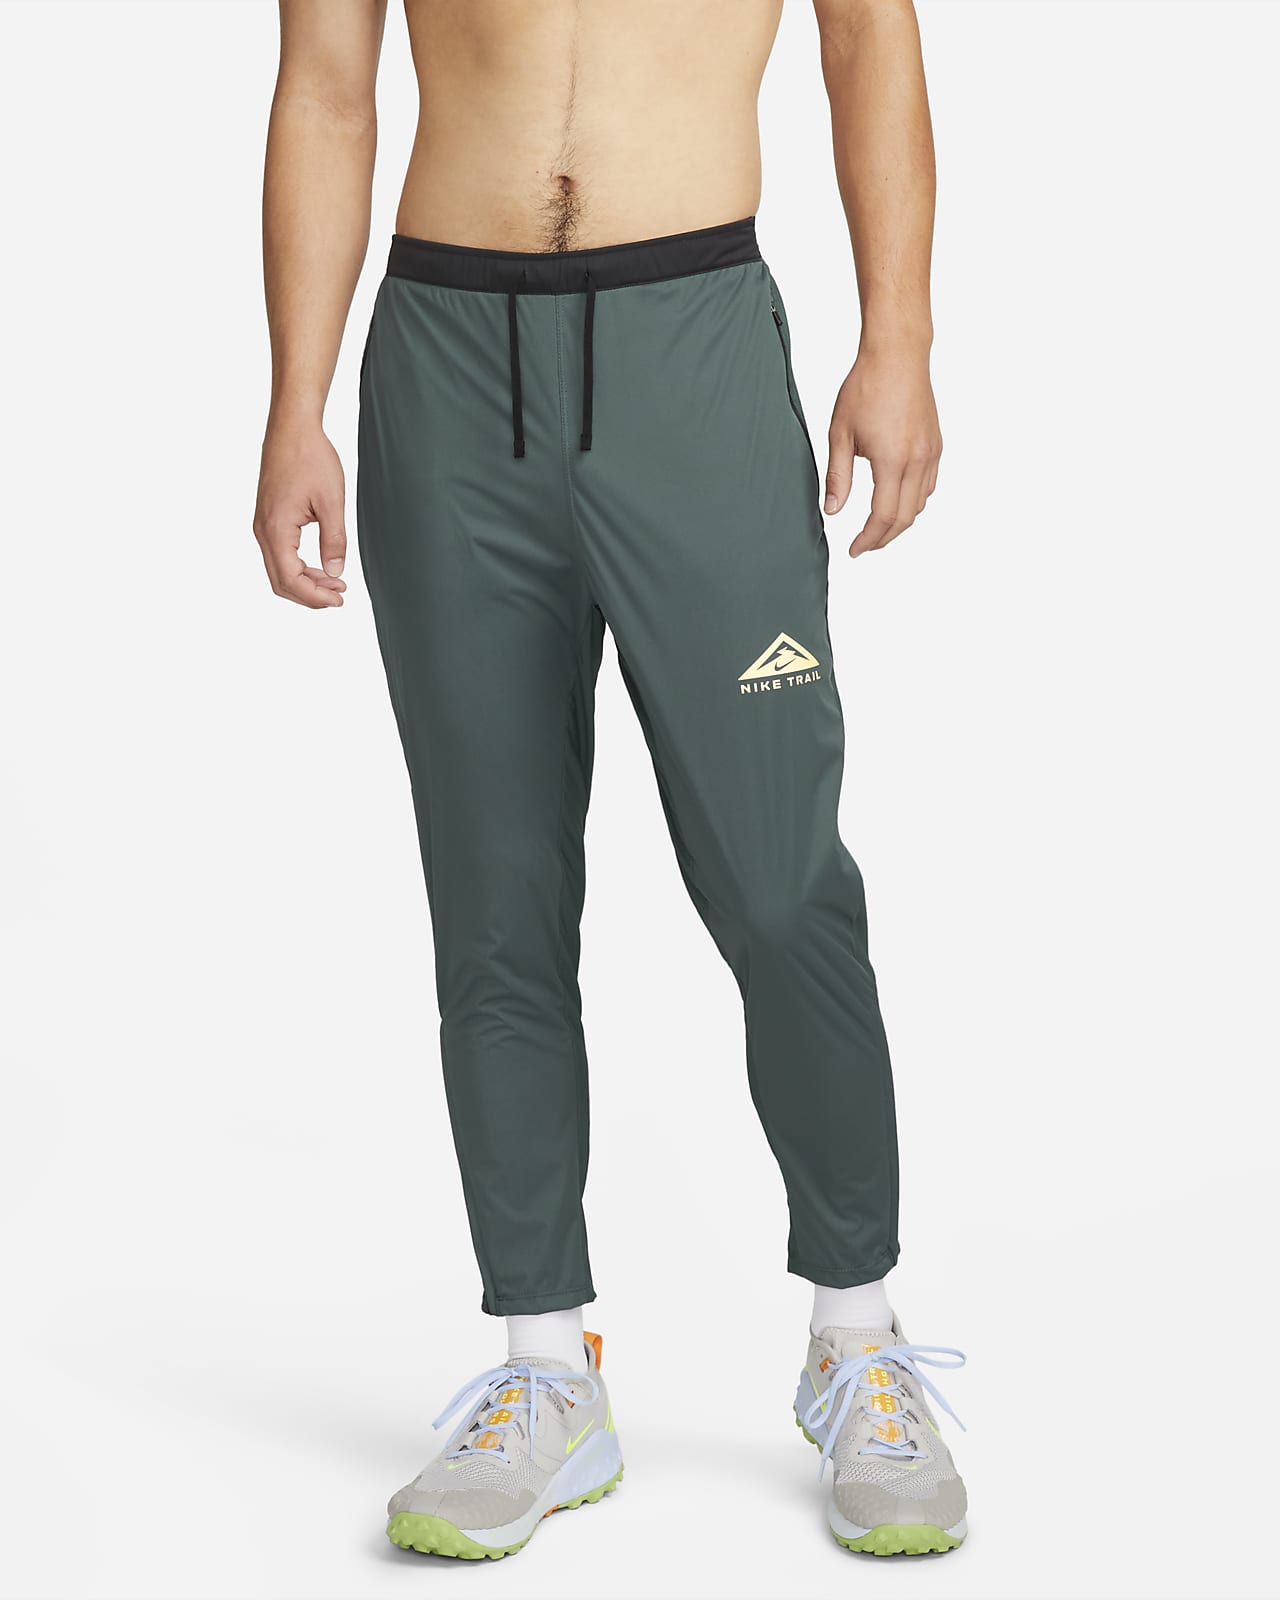 Nike Men's Phenom Elite Woven Trail Running Pants - Black/White